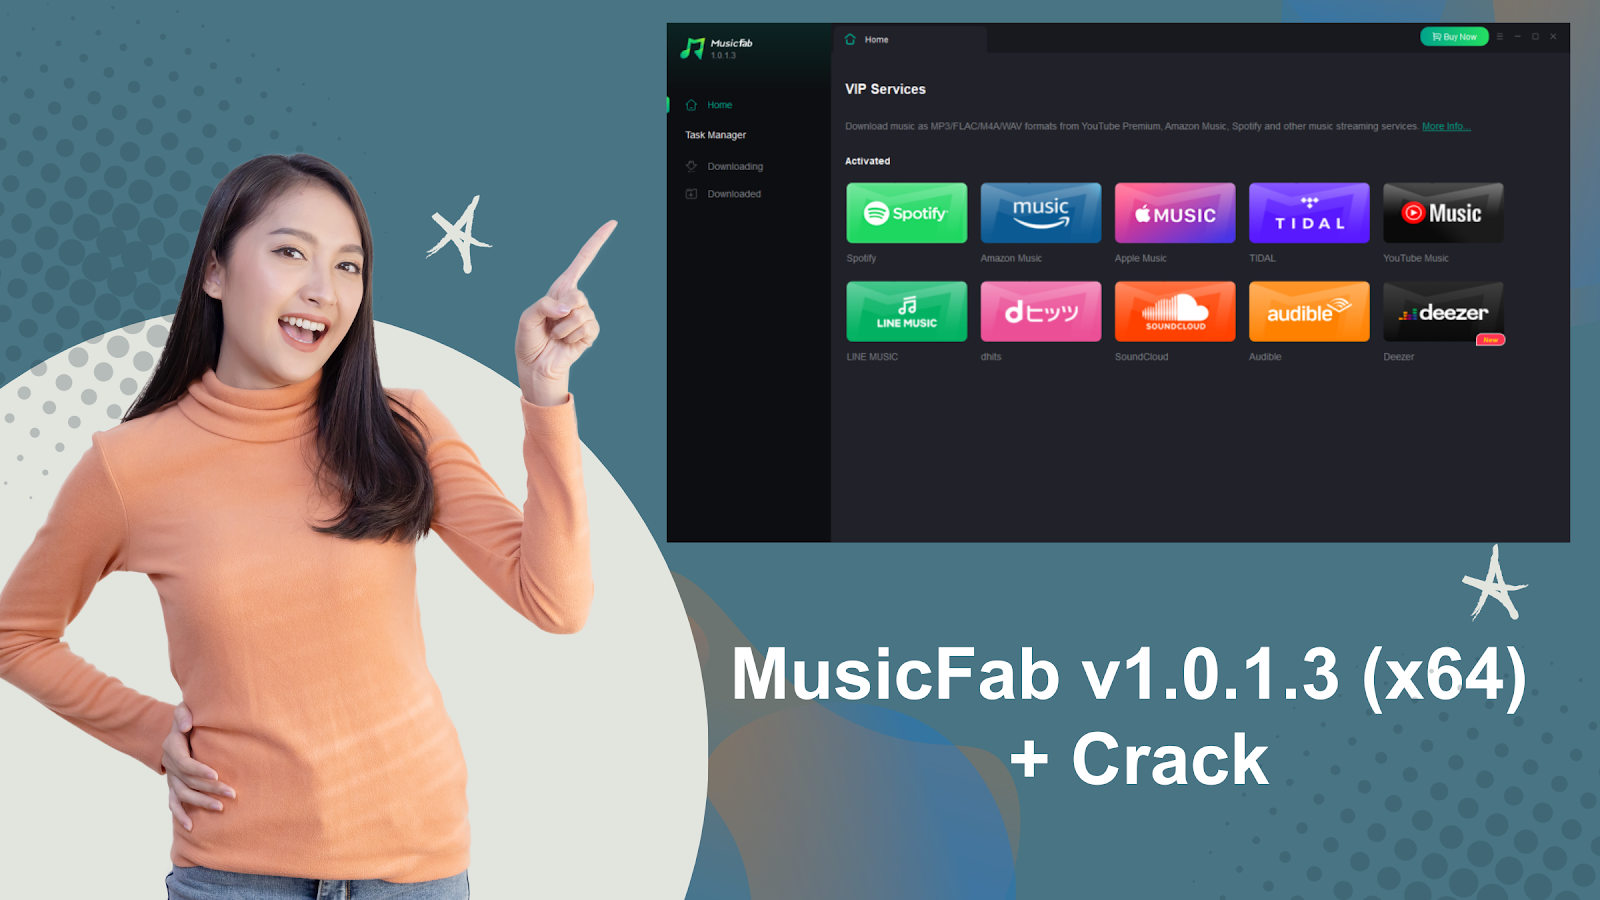 Free MusicFab v1.0.1.3